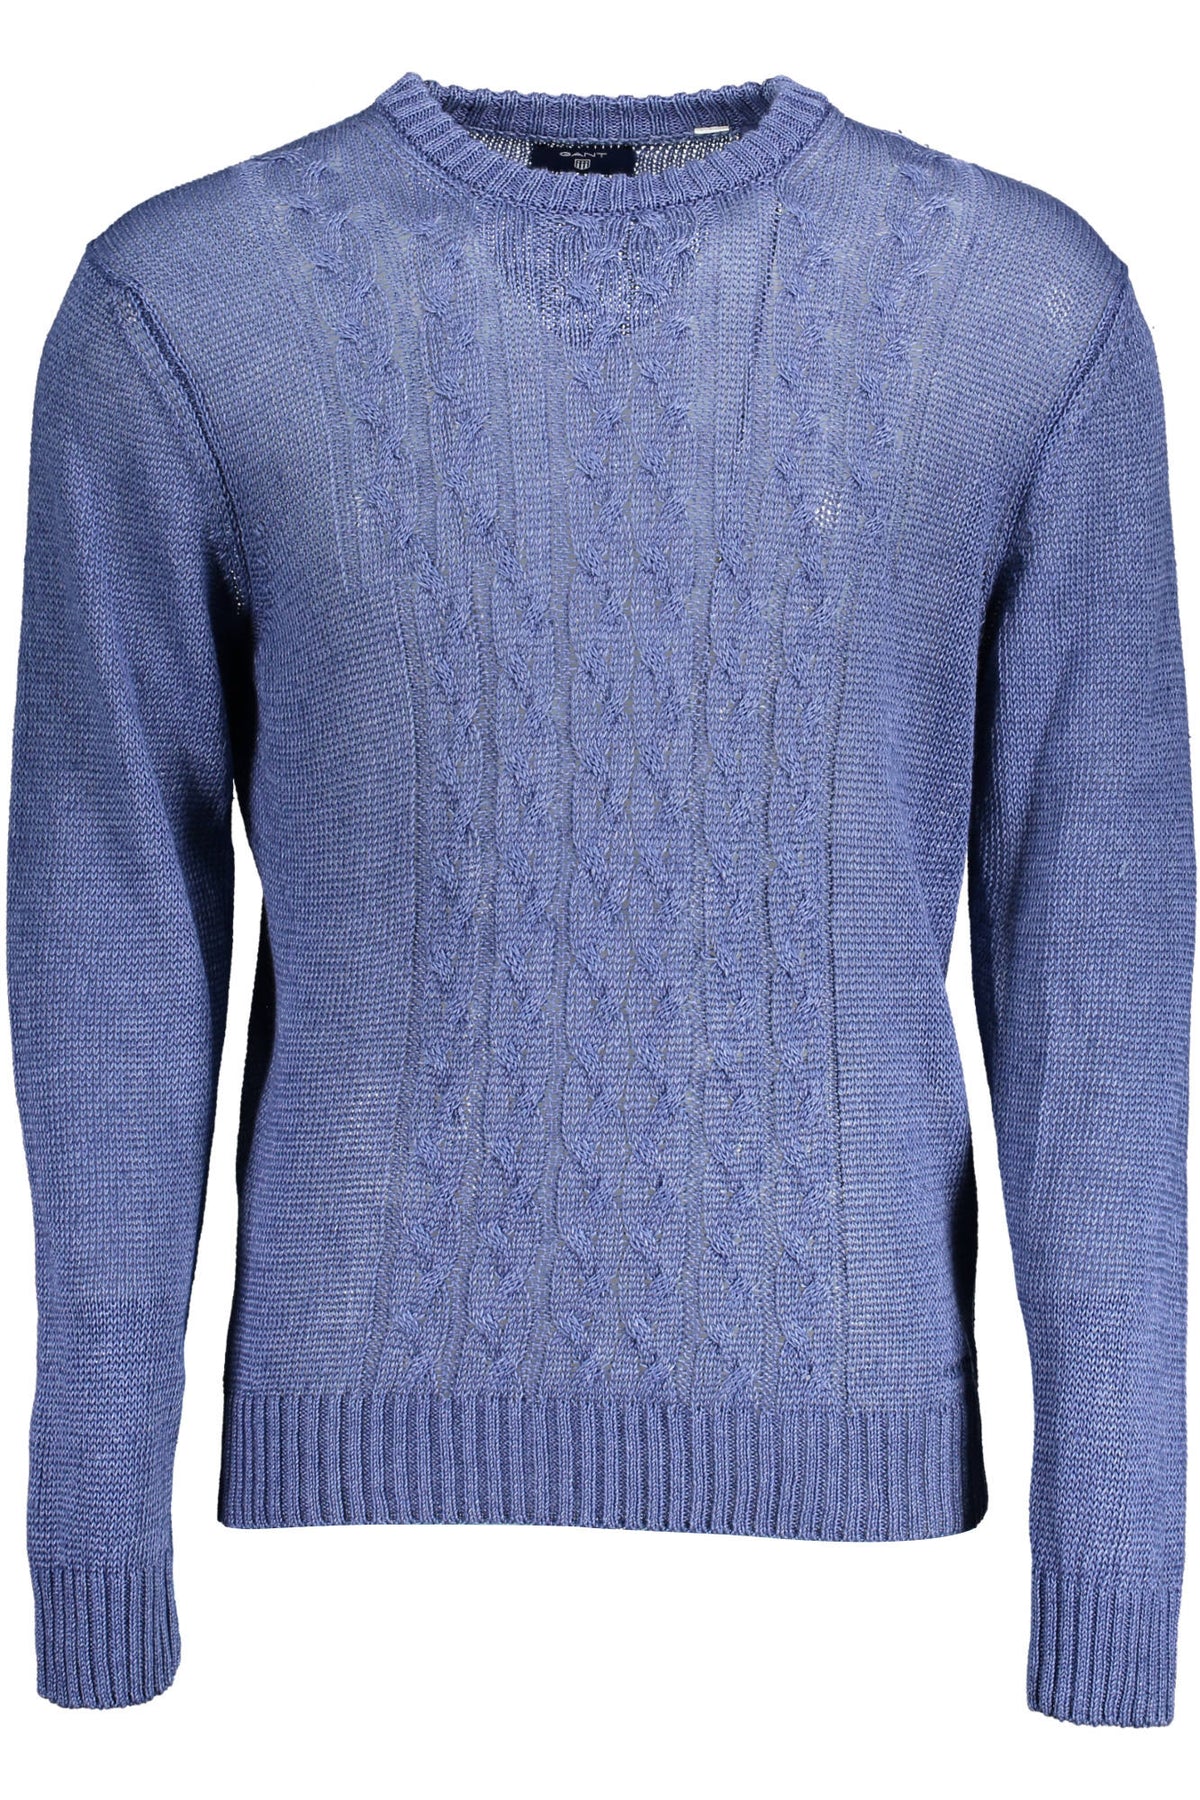 Gant Herren Pullover Sweatshirt mit Rundhalsausschnitt, langarm